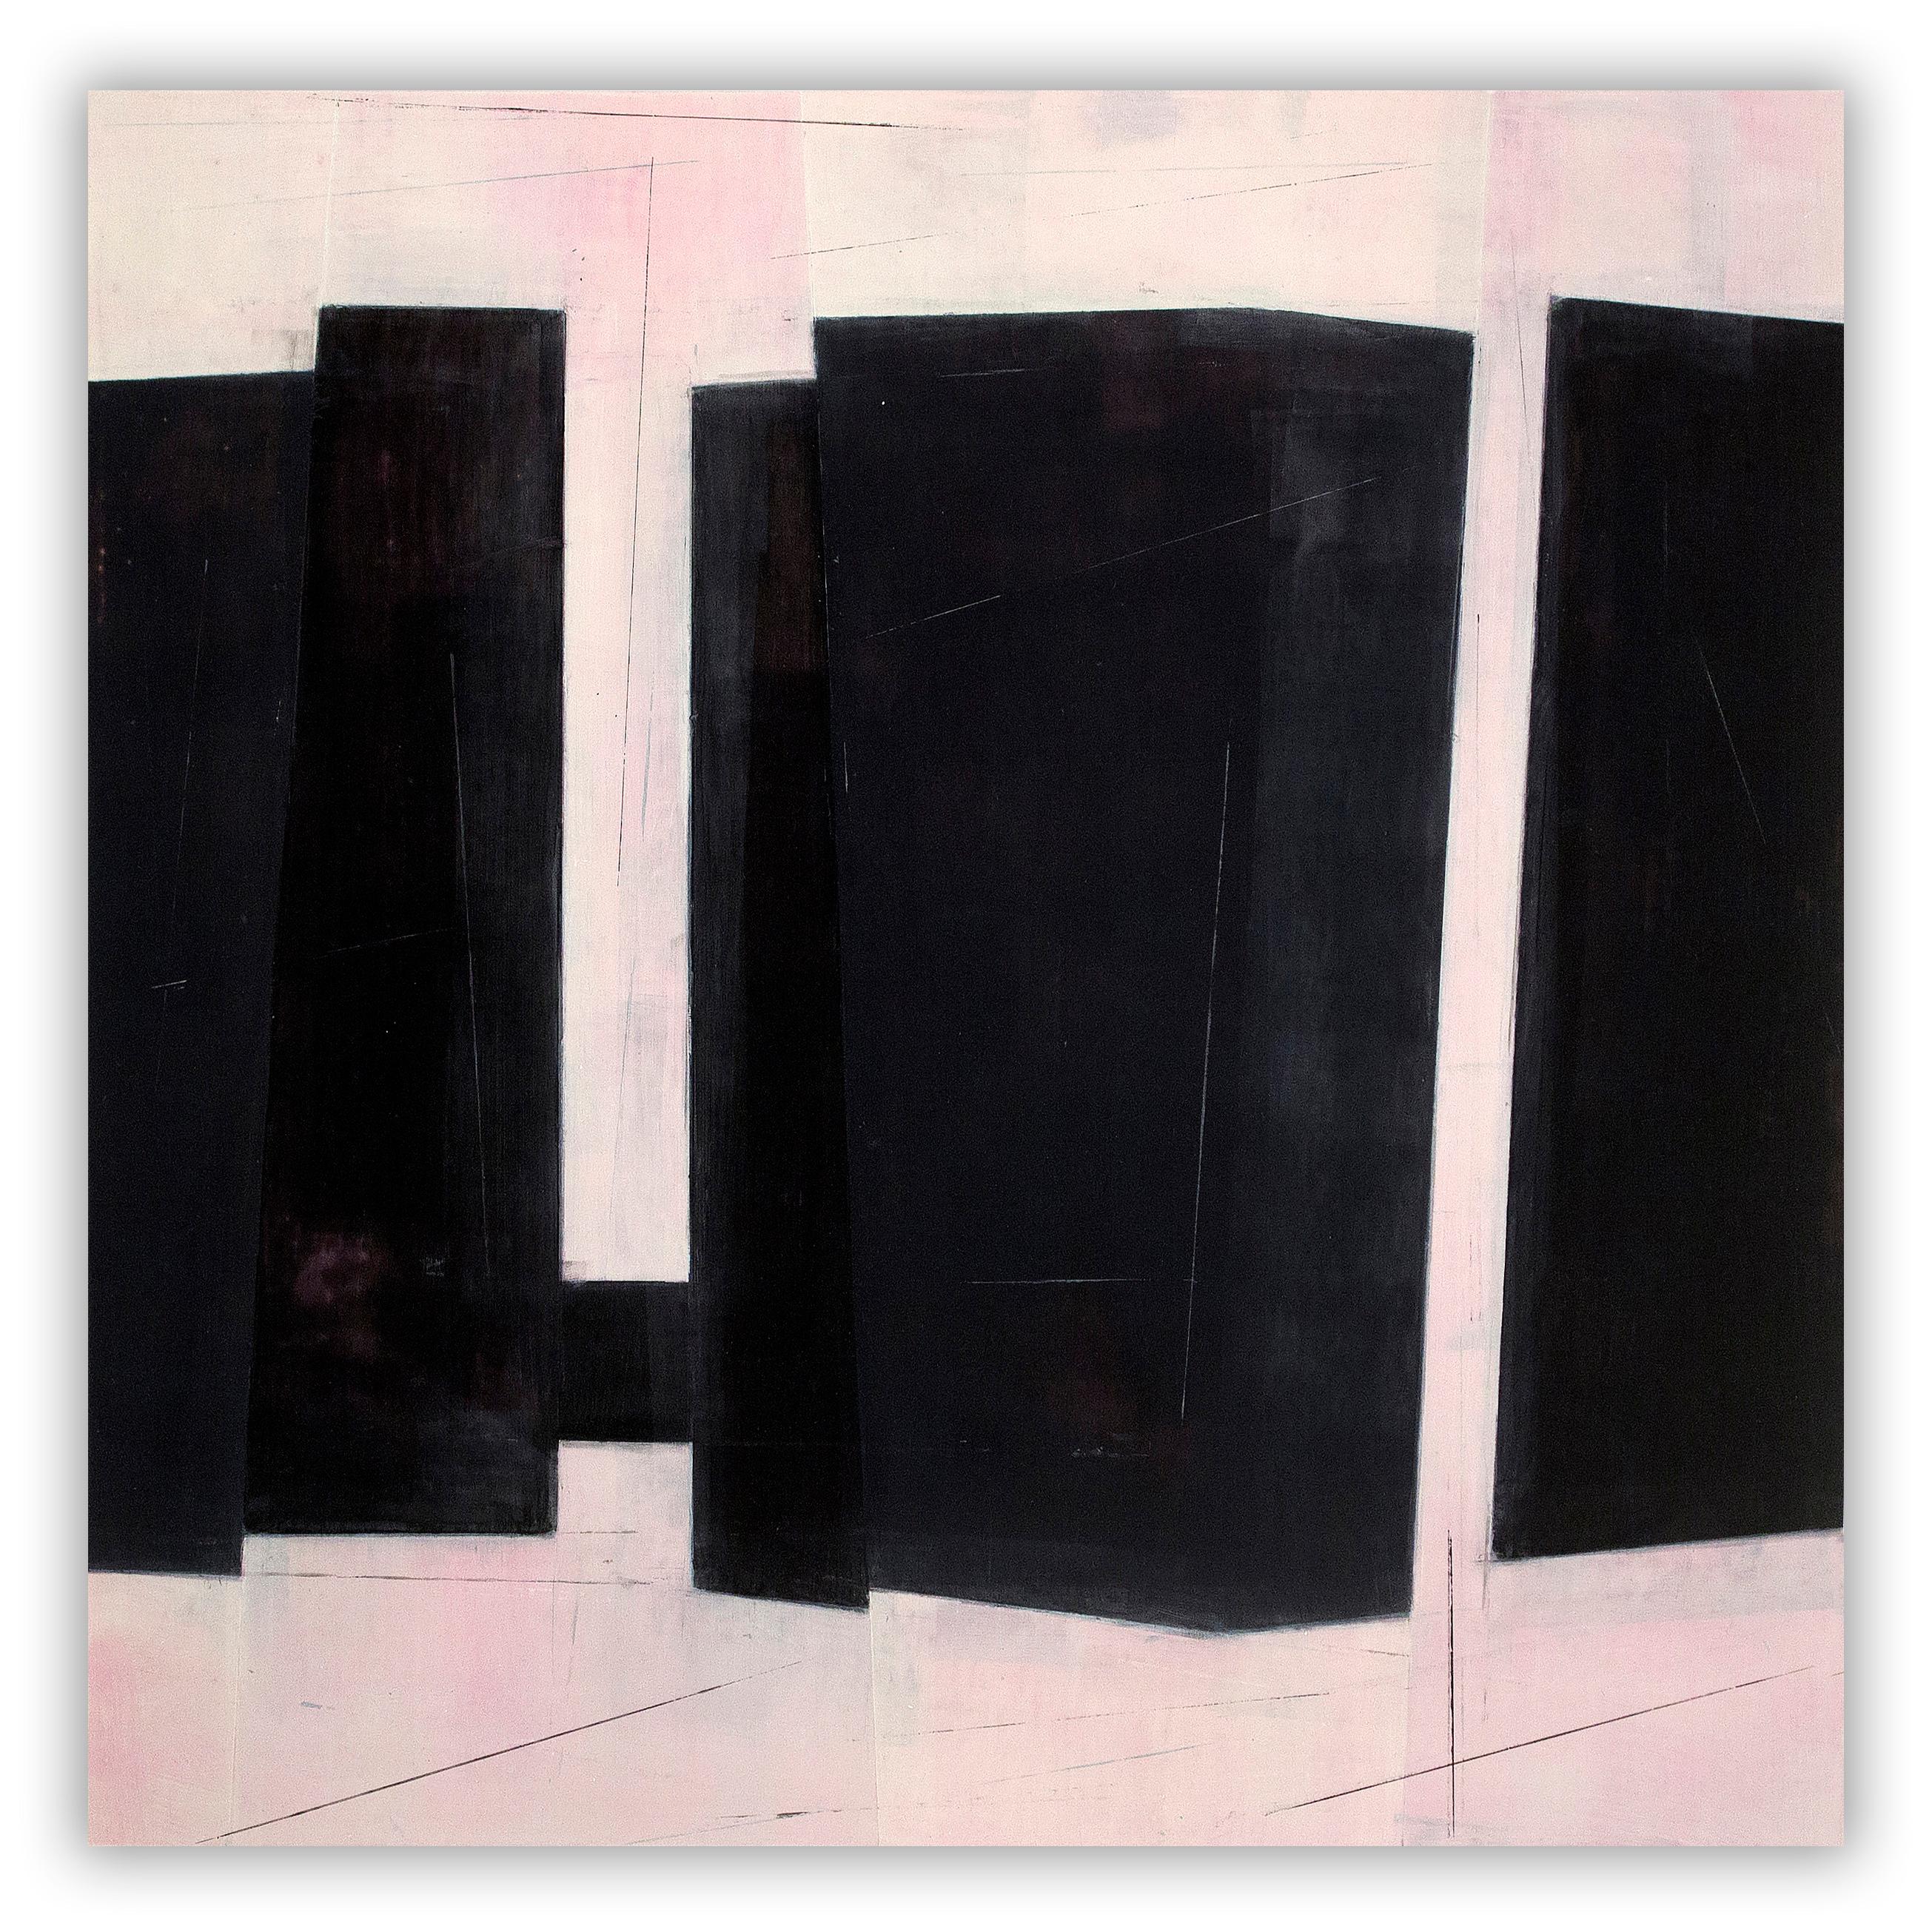 Steve baris Abstract Painting – Chunkchain D2 (Abstraktes Gemälde)